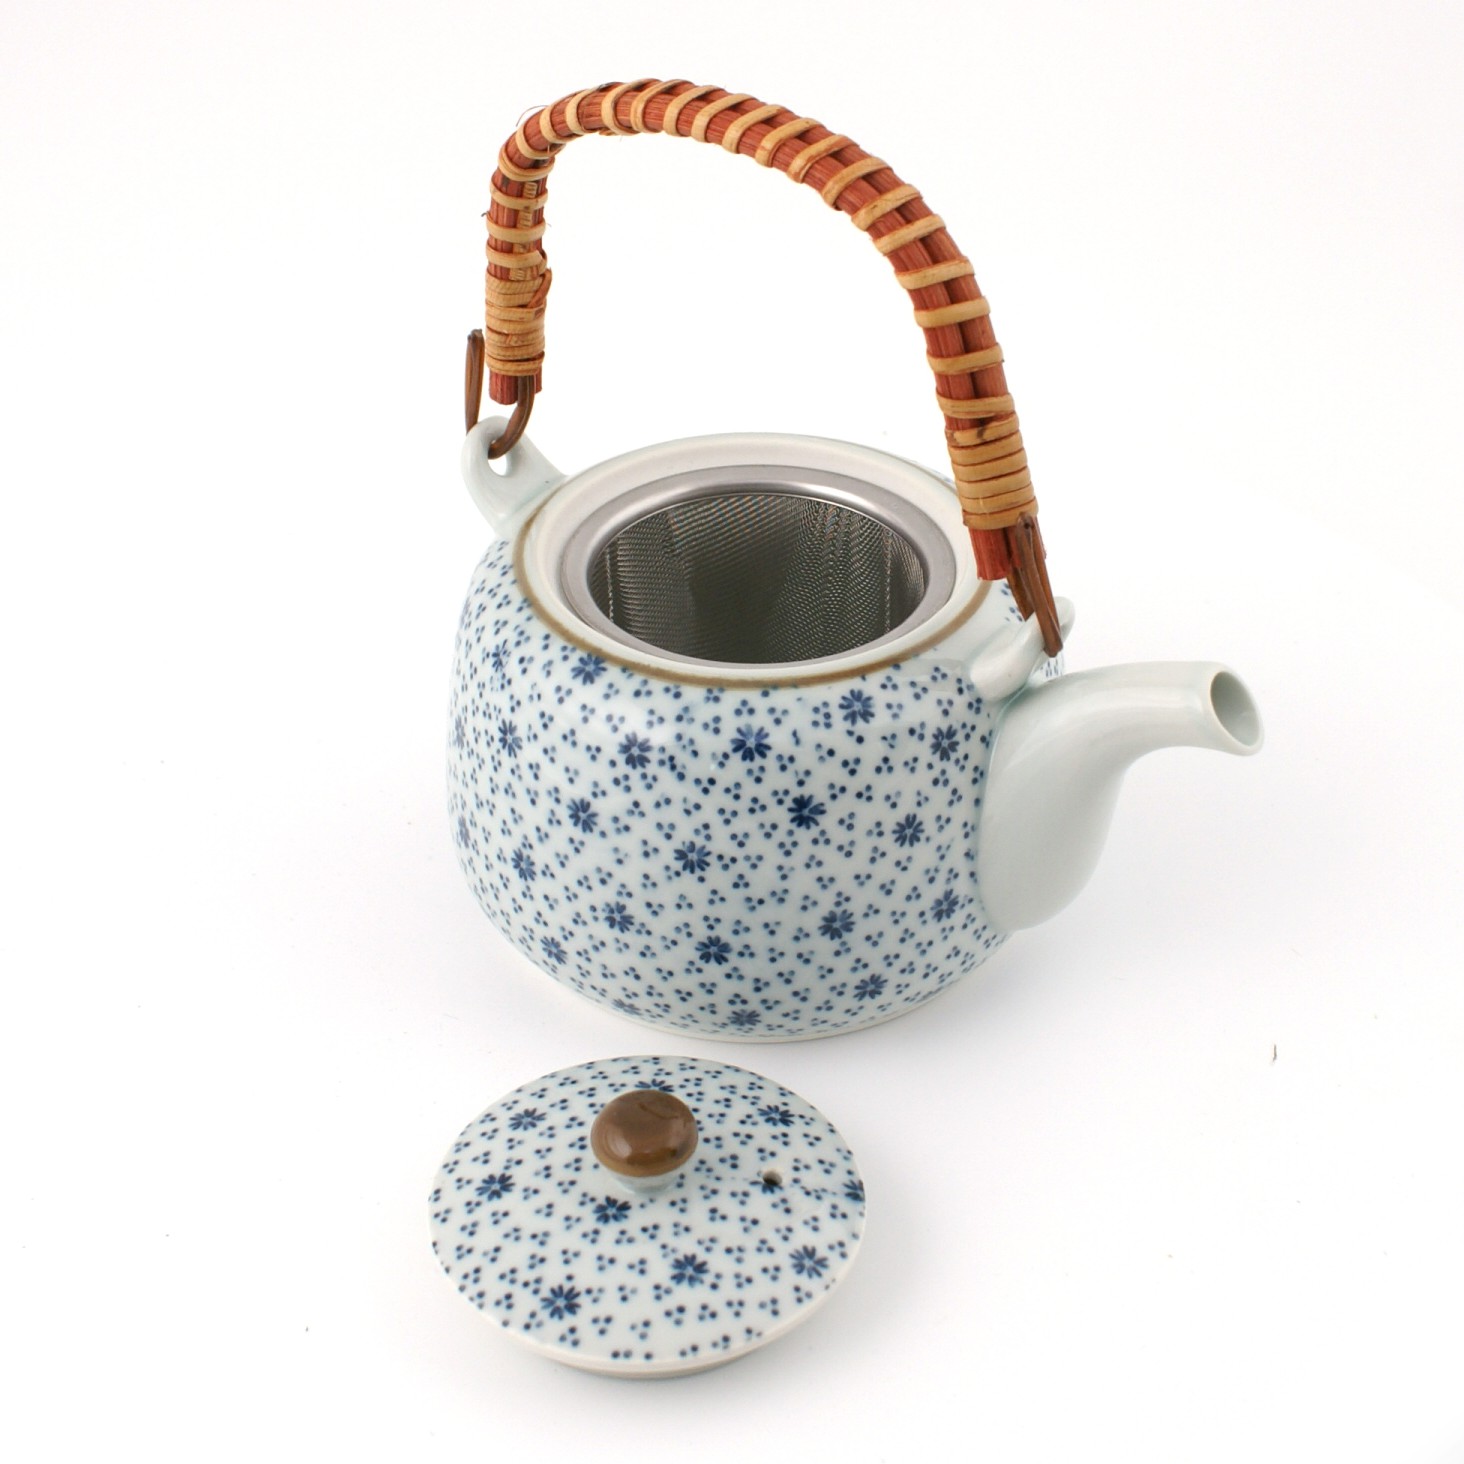 Teiera in ceramica giapponese con manico, IKIWATARU, linea nera e blu